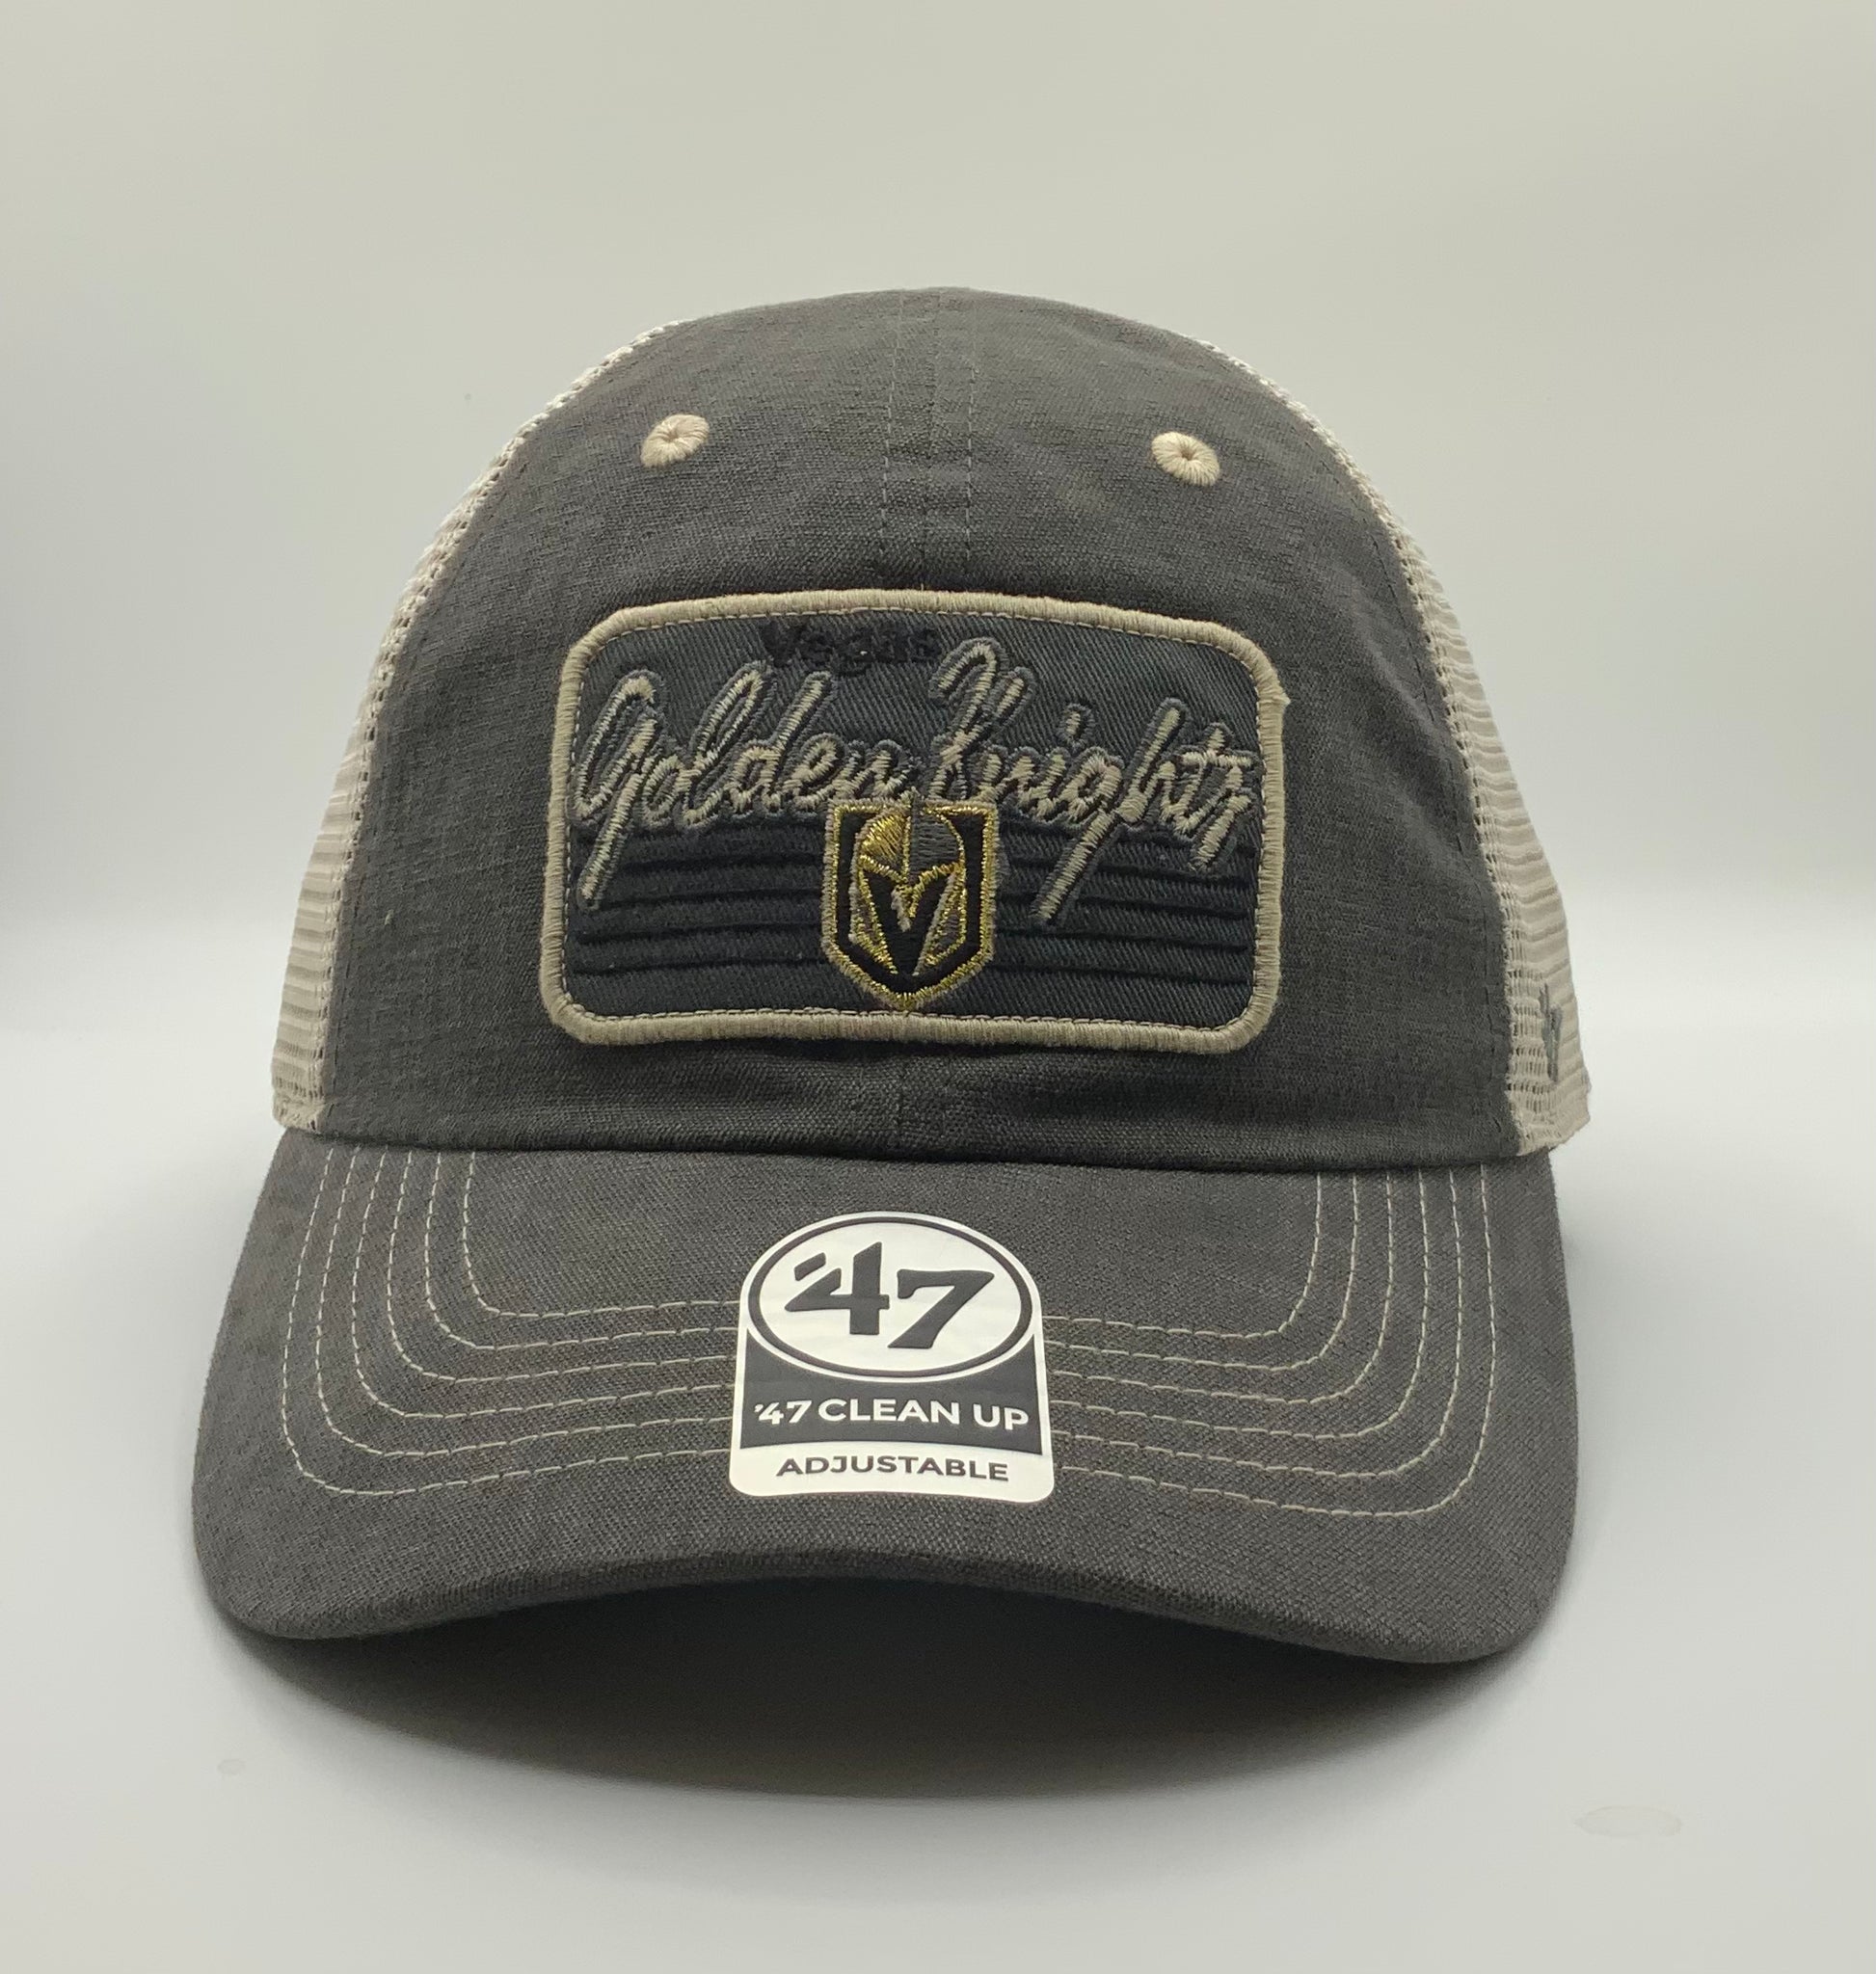 New Jersey Devils '47 Alternate Logo Clean Up Adjustable Hat - Black